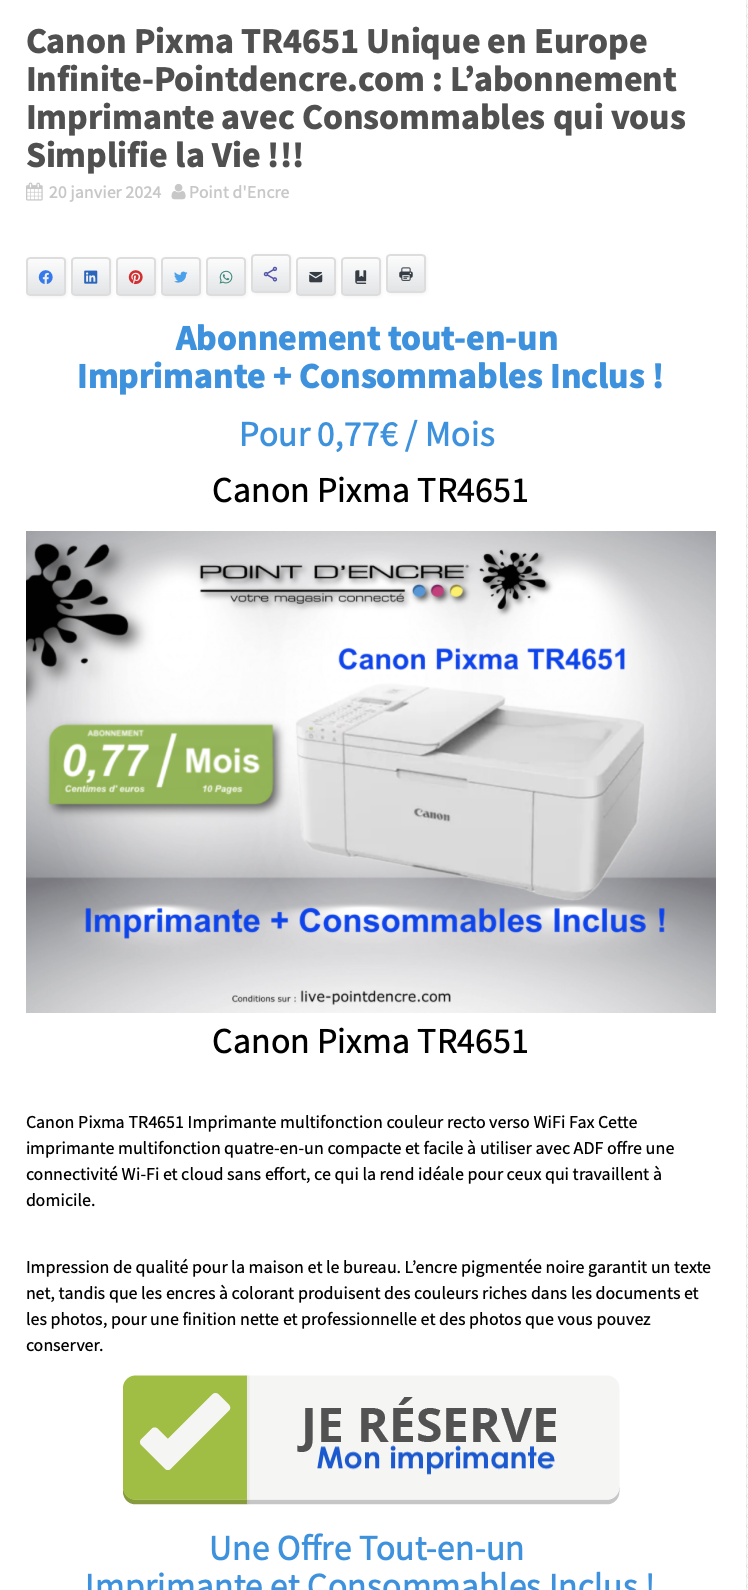 Canon Pixma TR4651 Unique en Europe Infinite-Pointdencre.com : L’abonnement Imprimante avec Consommables qui vous Simplifie la Vie !!!